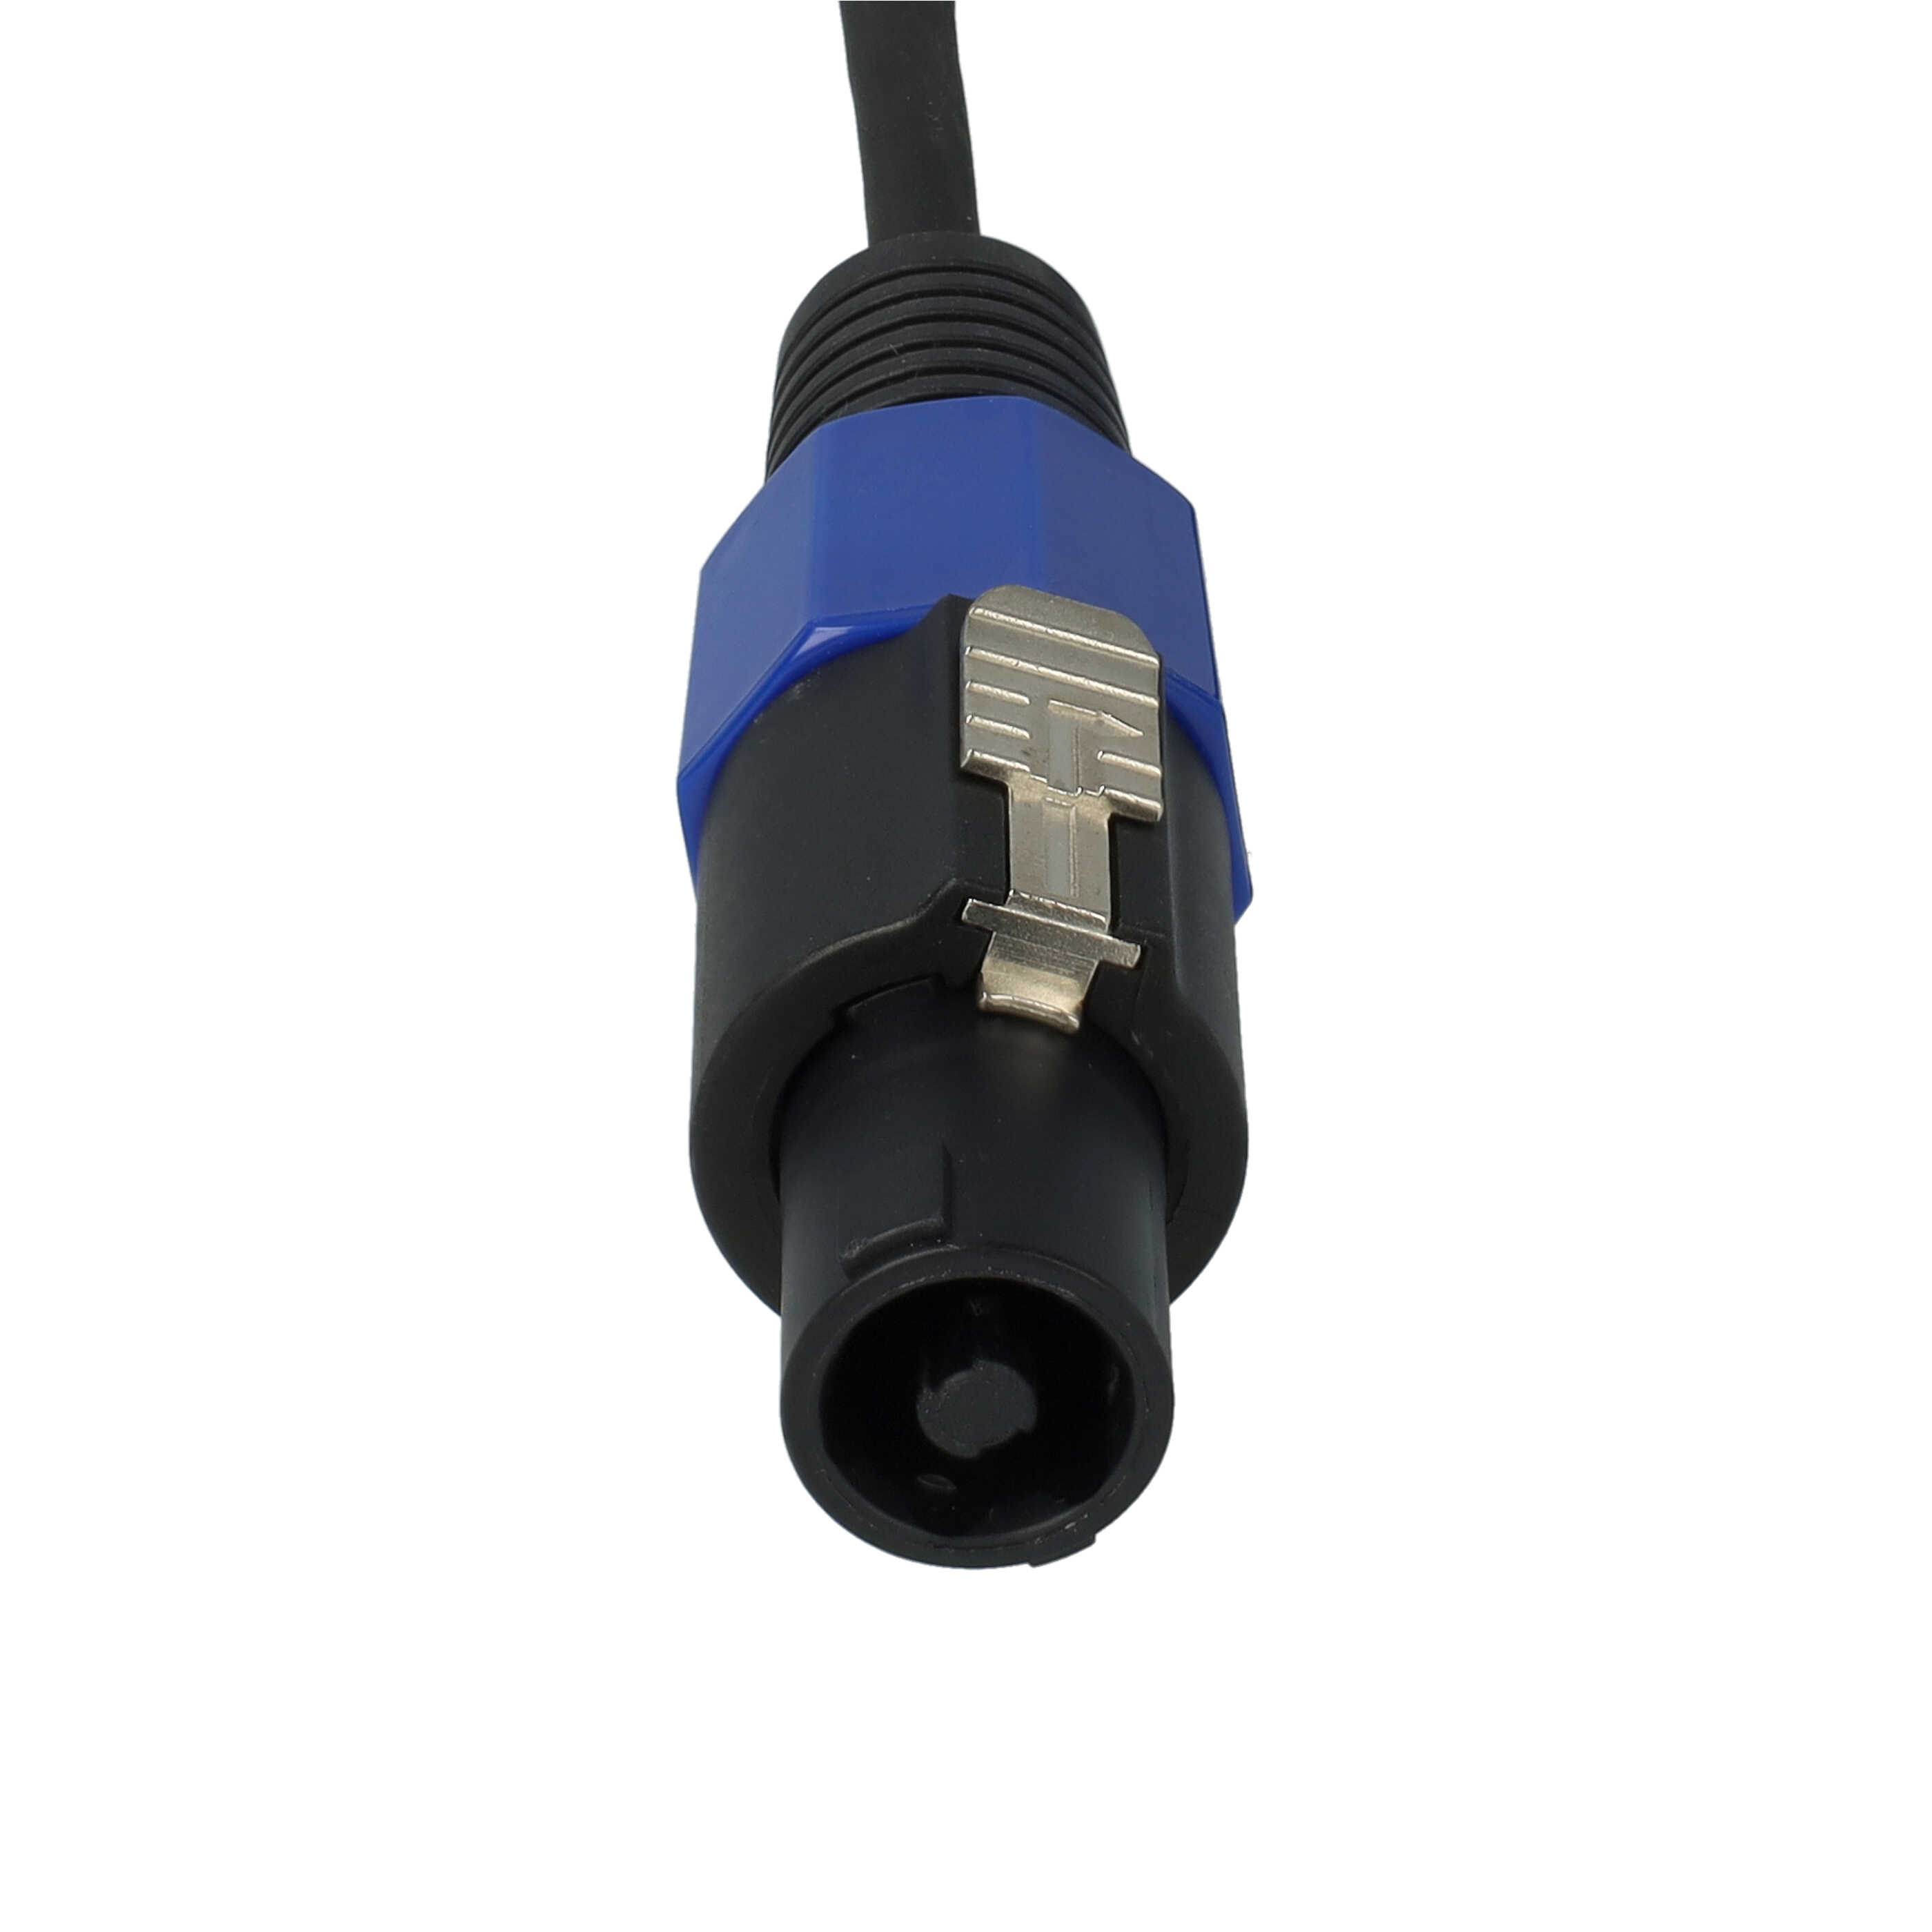 Kabel PA do basu B1, B2, ze złączem Speakon Bose, wszystkie moduły basowe B1 - kabel audio, 5 m